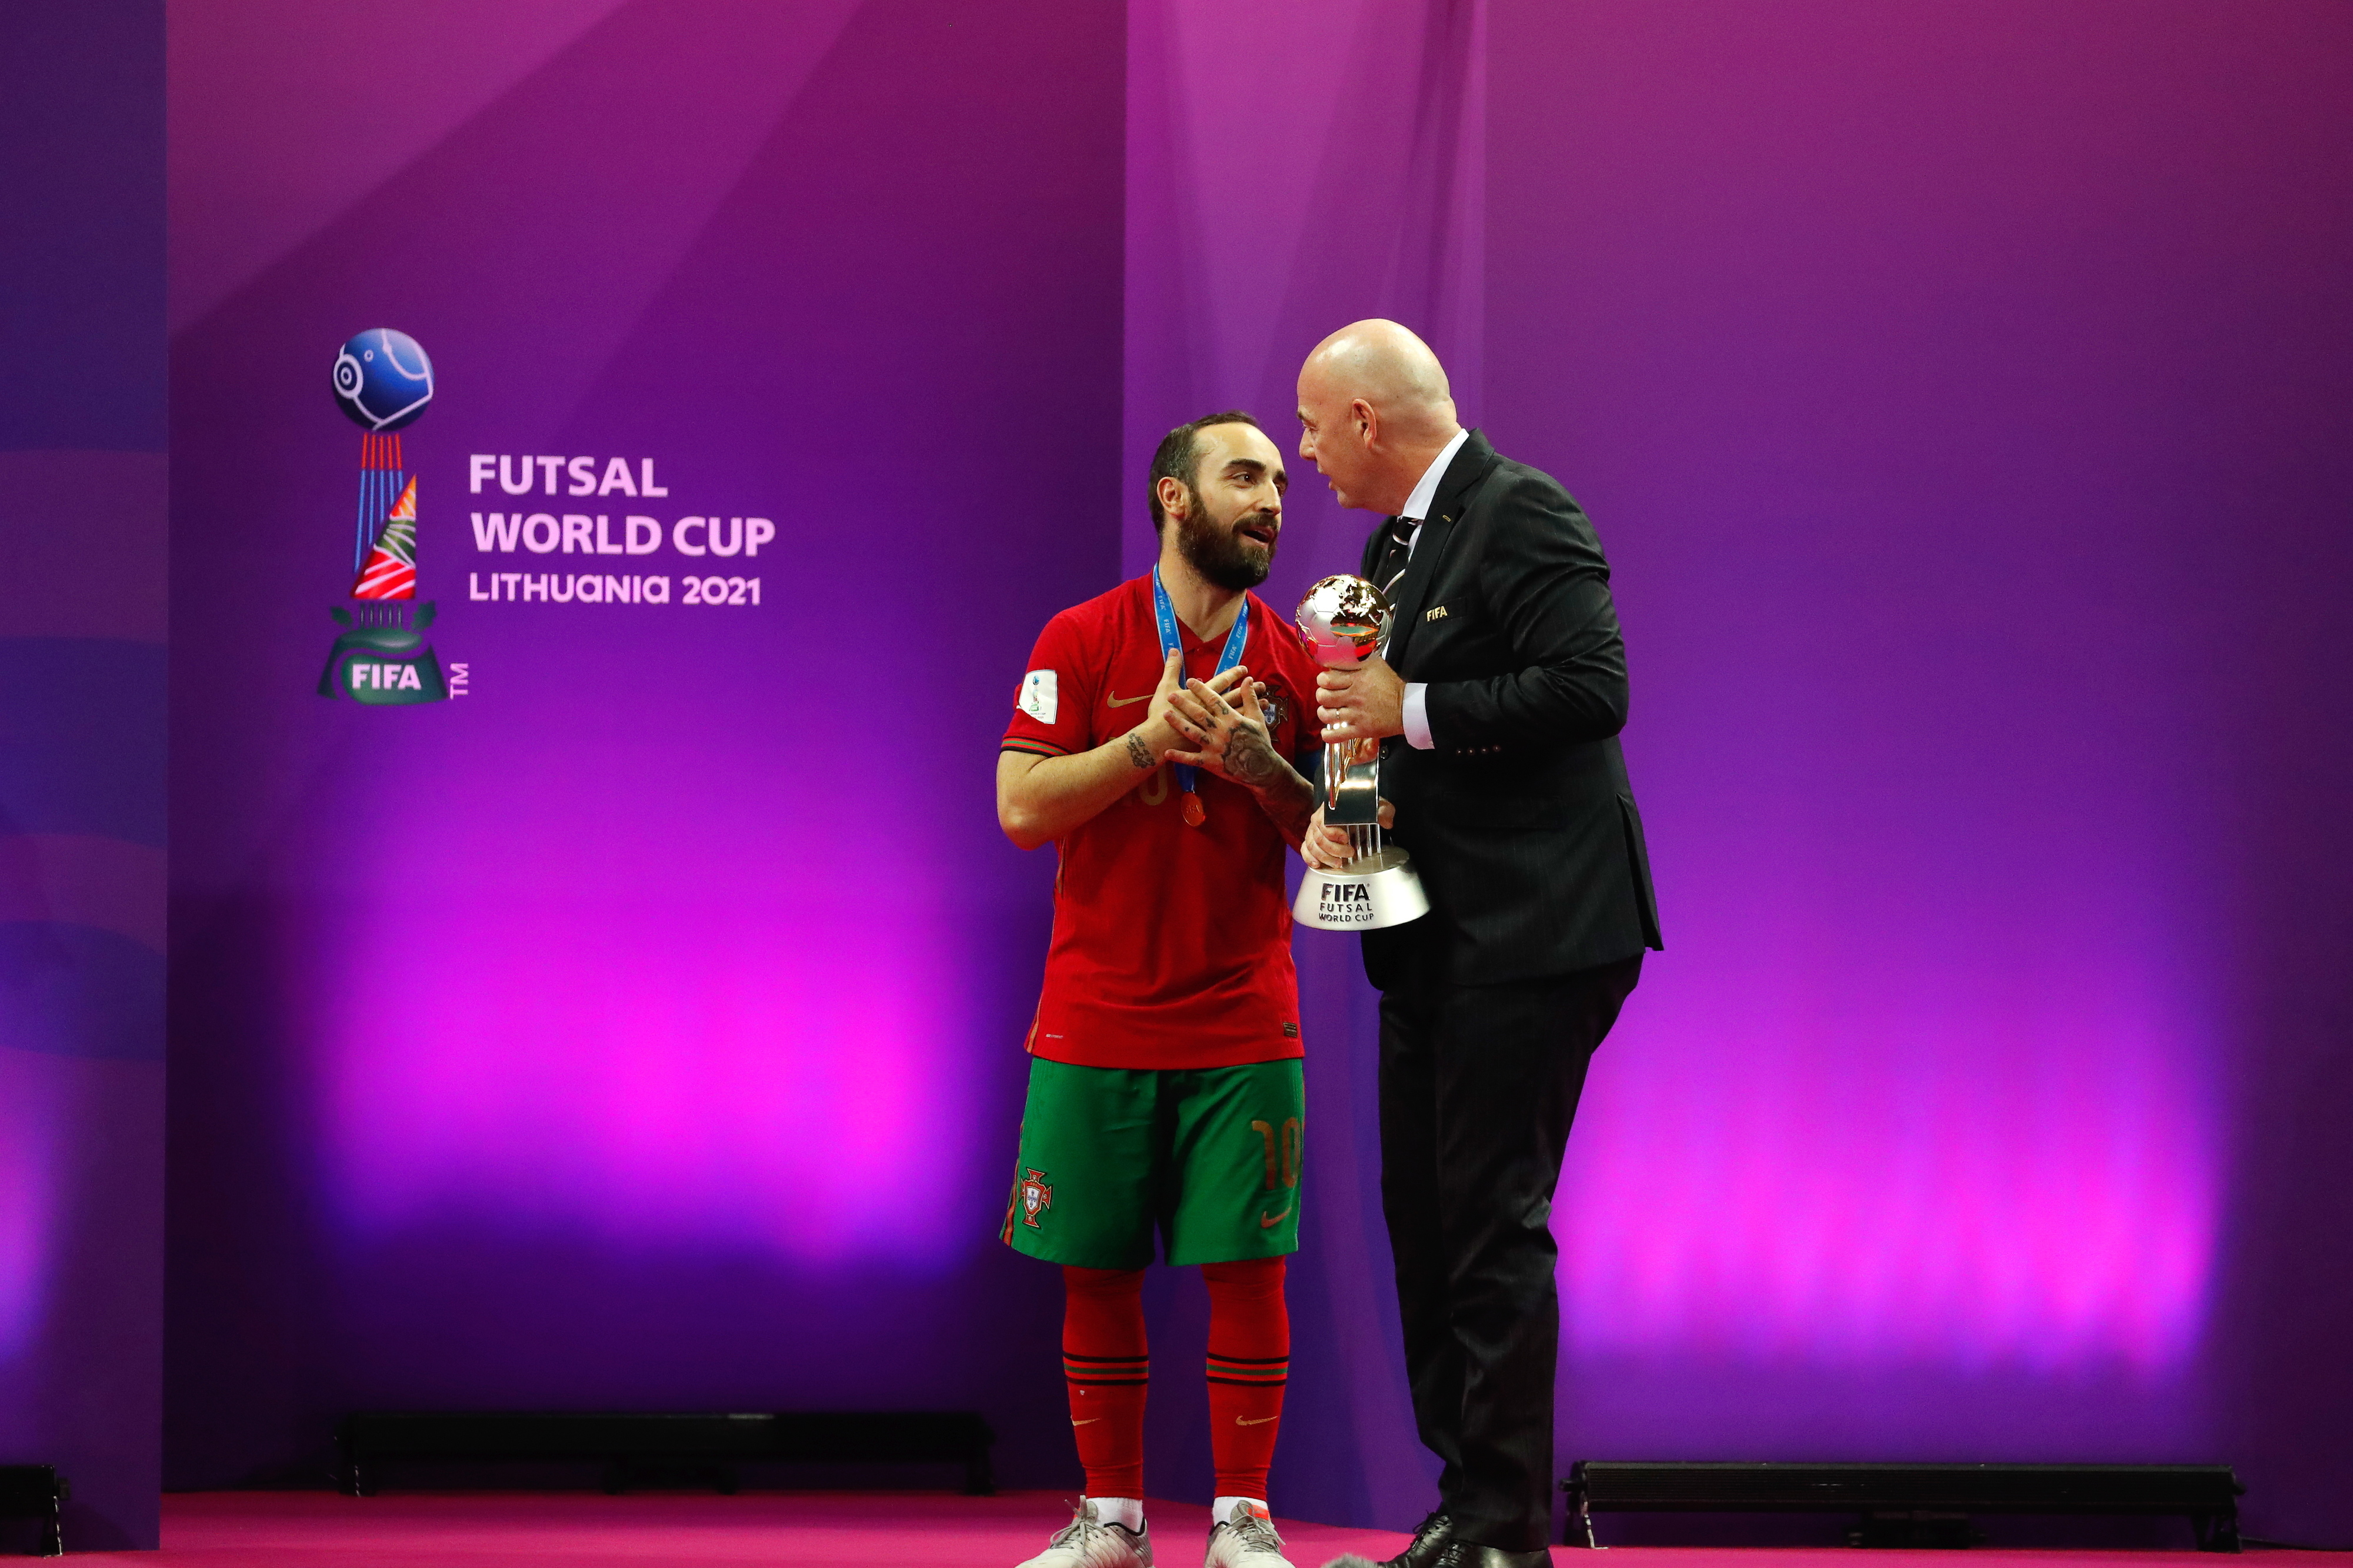 Futsal: Veja quem são os melhores jogadores do mundo na atualidade